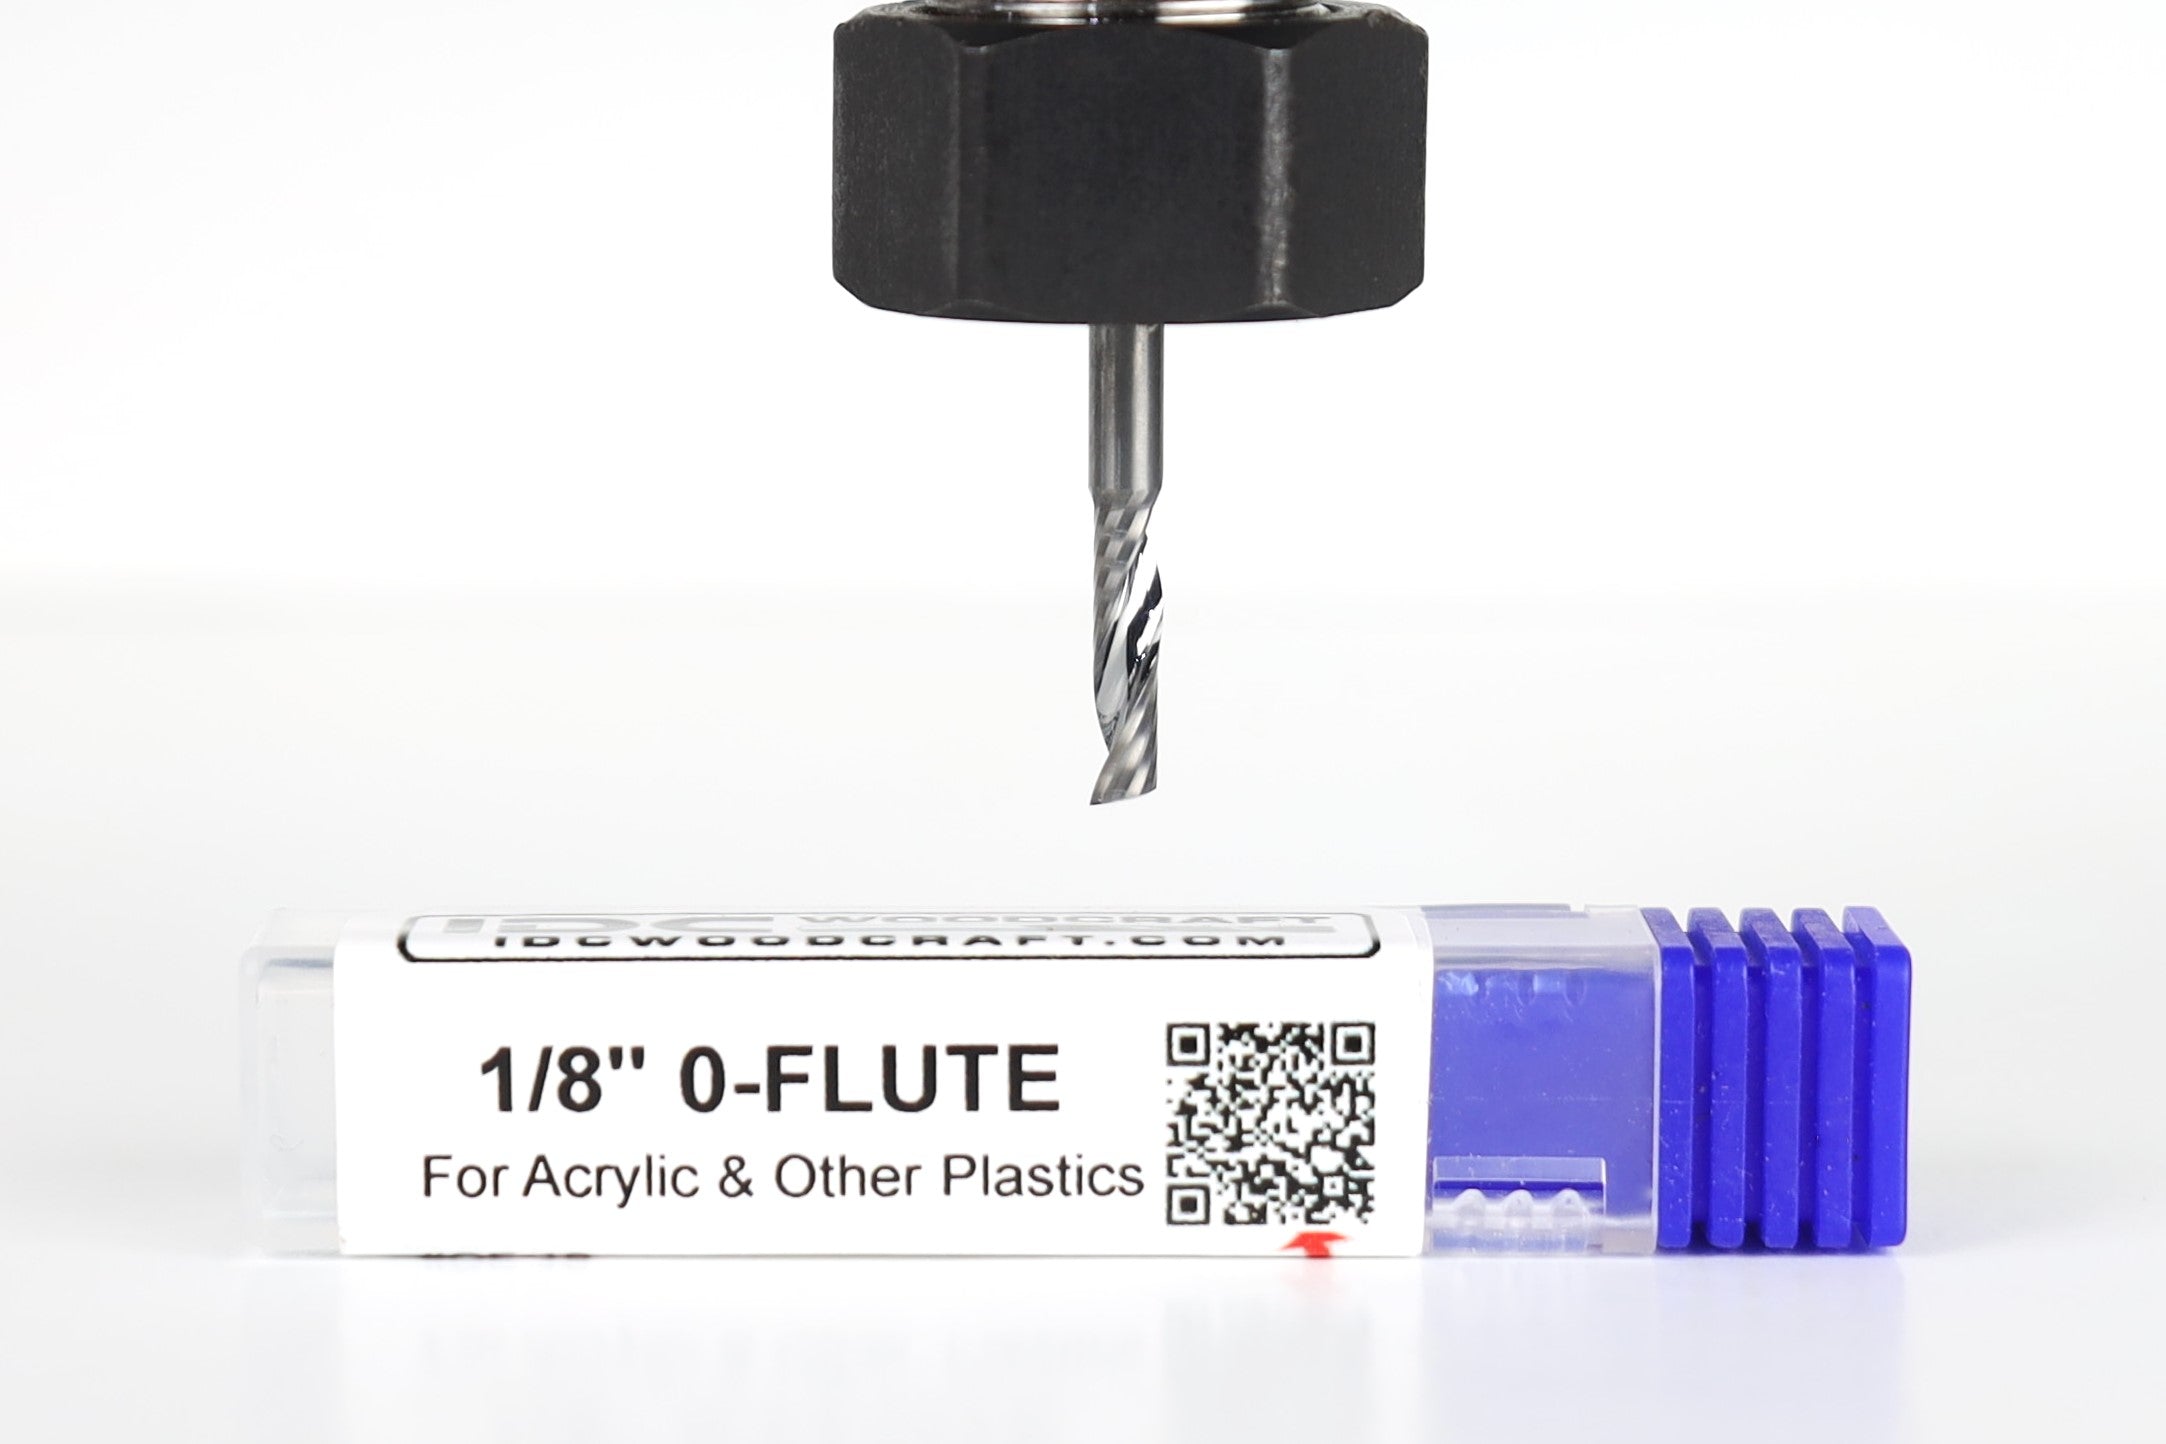 1/8" 0-Flute Bit For Acrylic (CNC Router), 1/8" Shank [Premium]